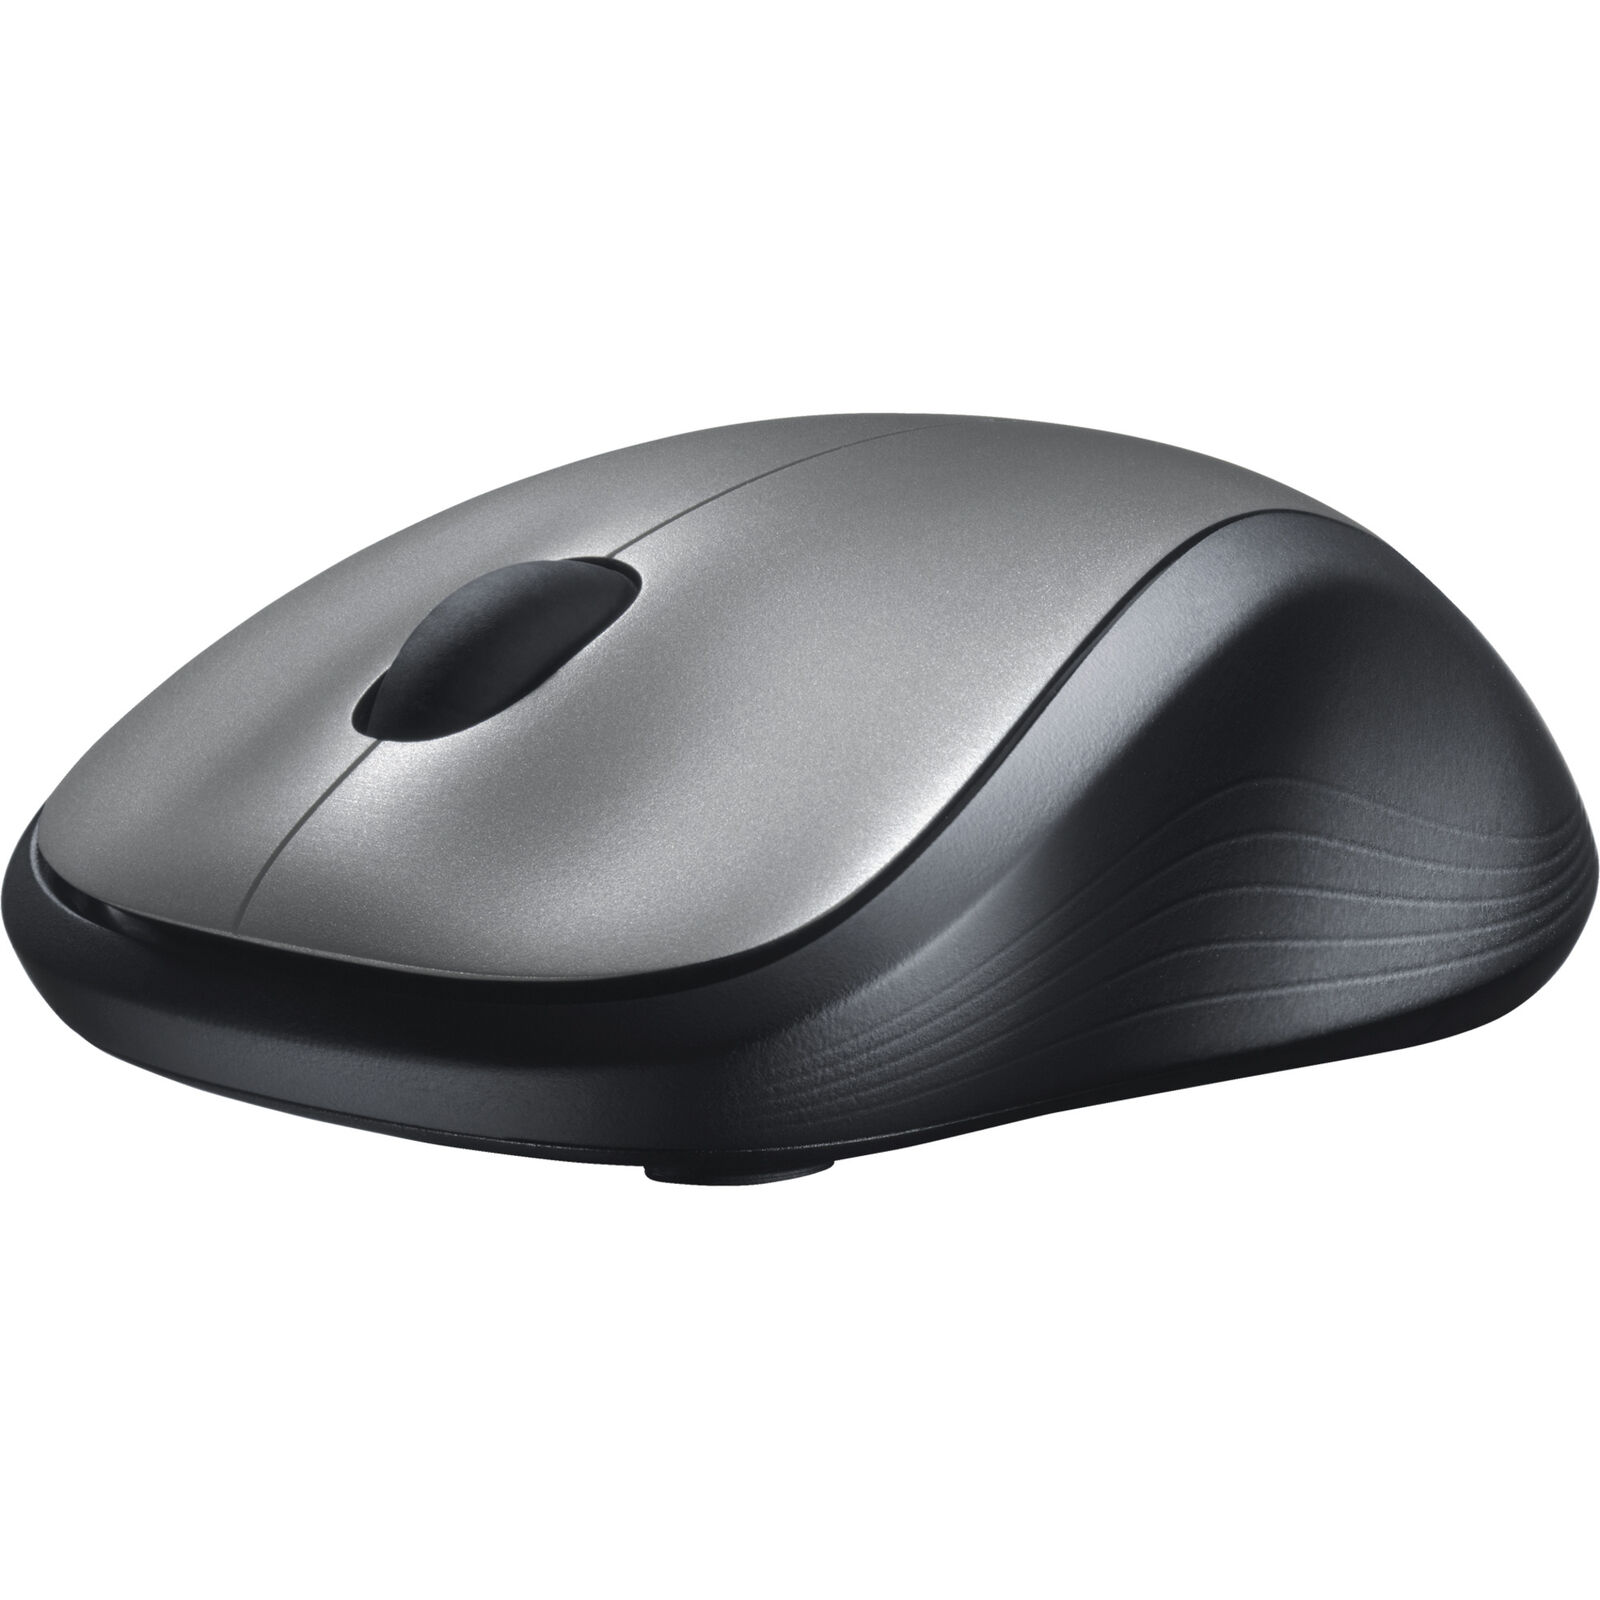 Беспроводная мышь m310. Мышь Logitech Wireless Mouse m310. Мышка беспроводная Logitech m310. Мышь беспроводная Logitech Wireless Mouse m310. Мышь Logitech m310 Silver (910-003986).